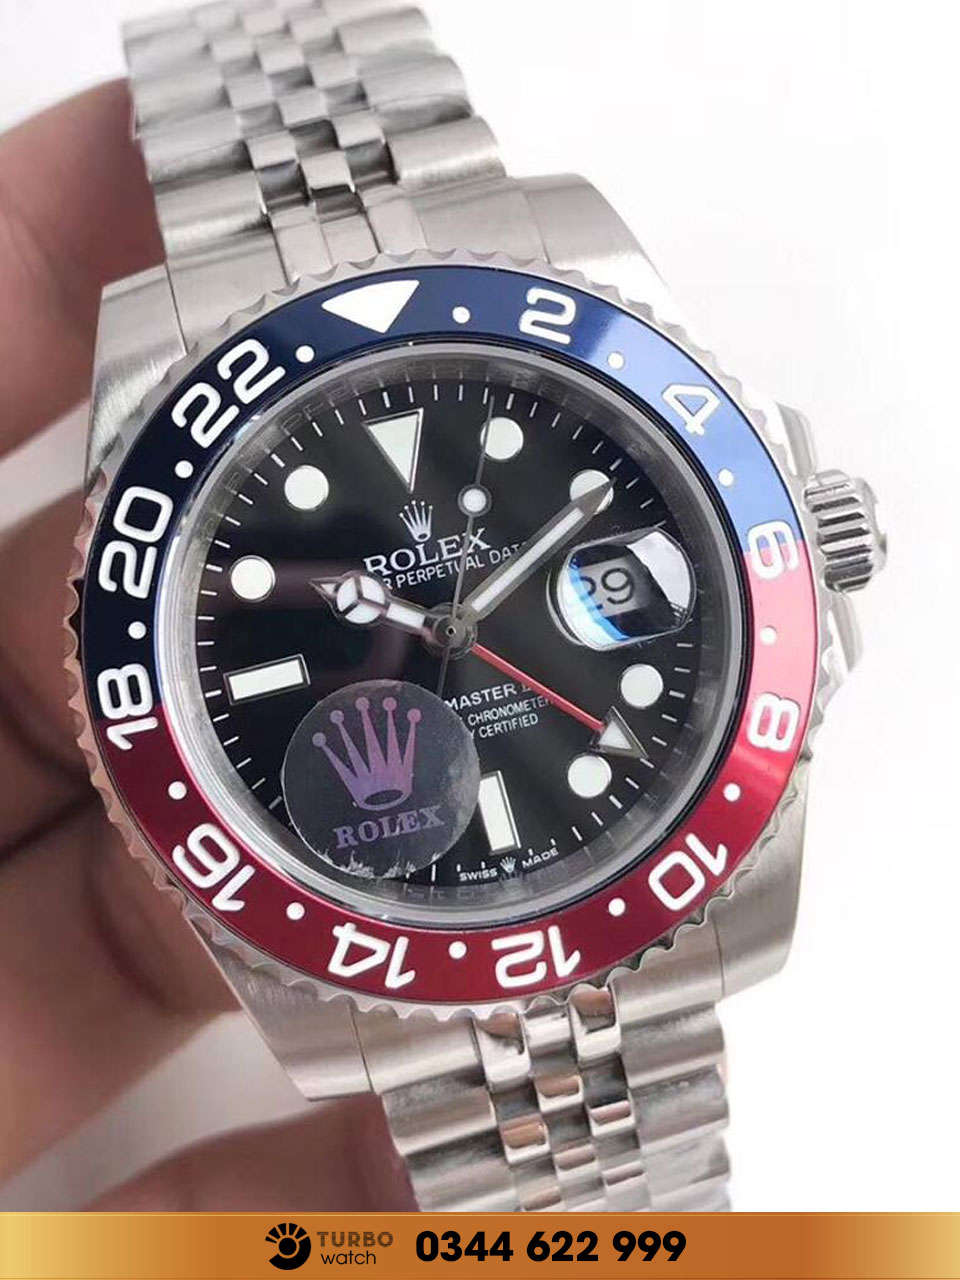 Đồng hồ Rolex super fake phiên bản không giới hạn - thỏa sức chọn lựa